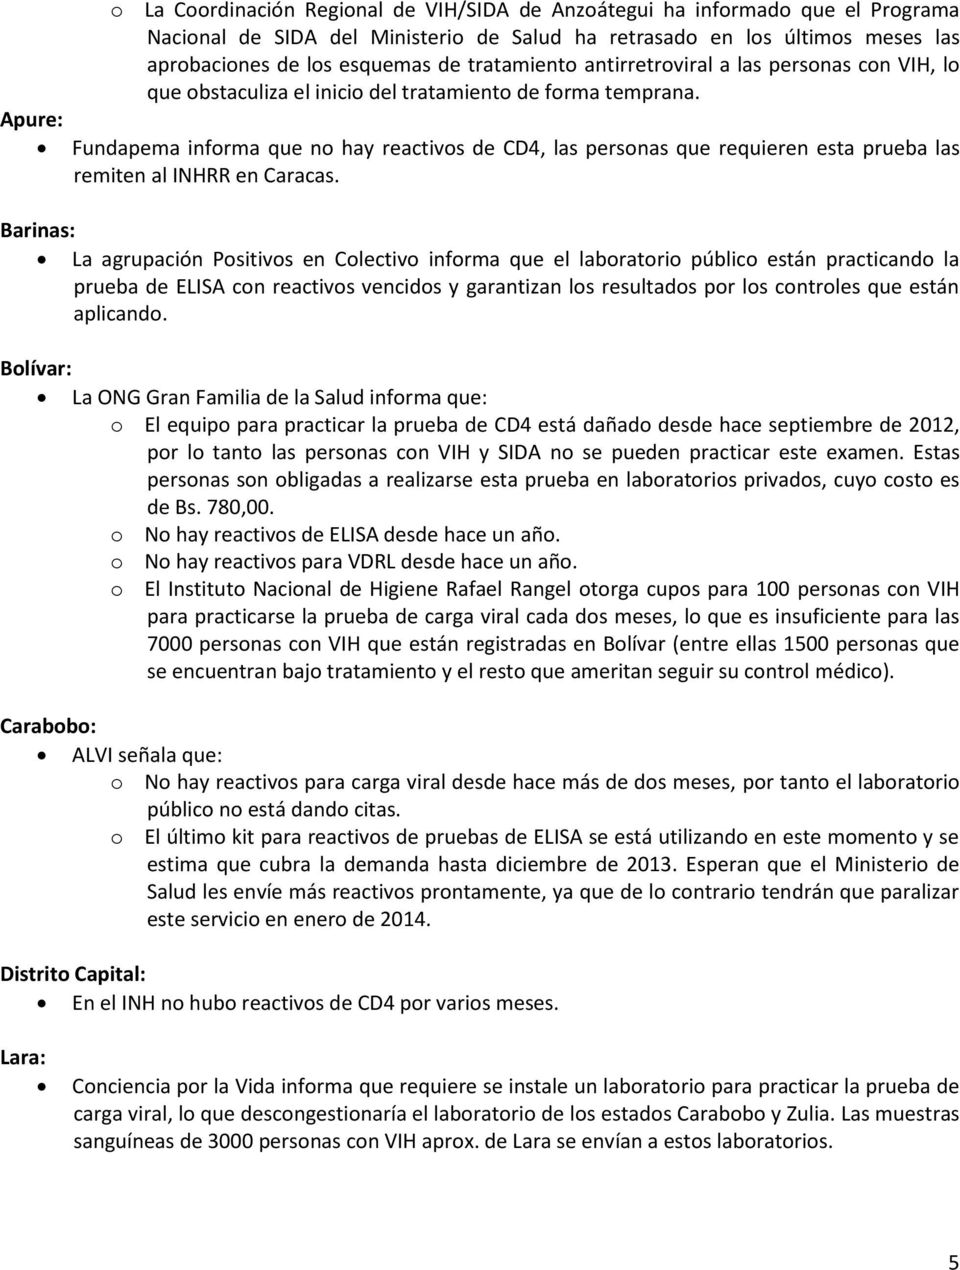 Fundapema informa que no hay reactivos de CD4, las personas que requieren esta prueba las remiten al INHRR en Caracas.